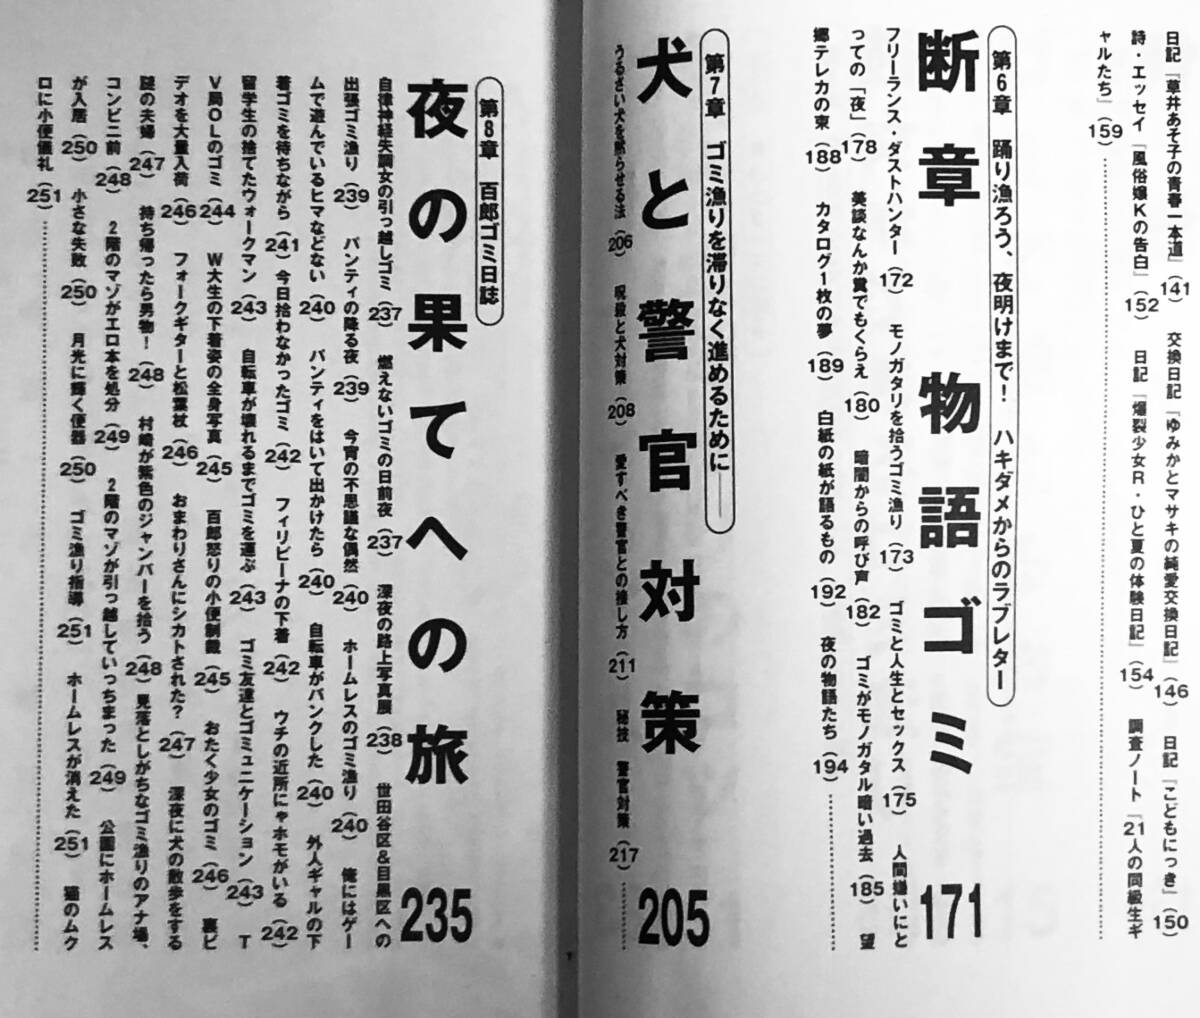 鬼畜のススメ / 村崎百郎 1996年 初版 データハウスの画像4